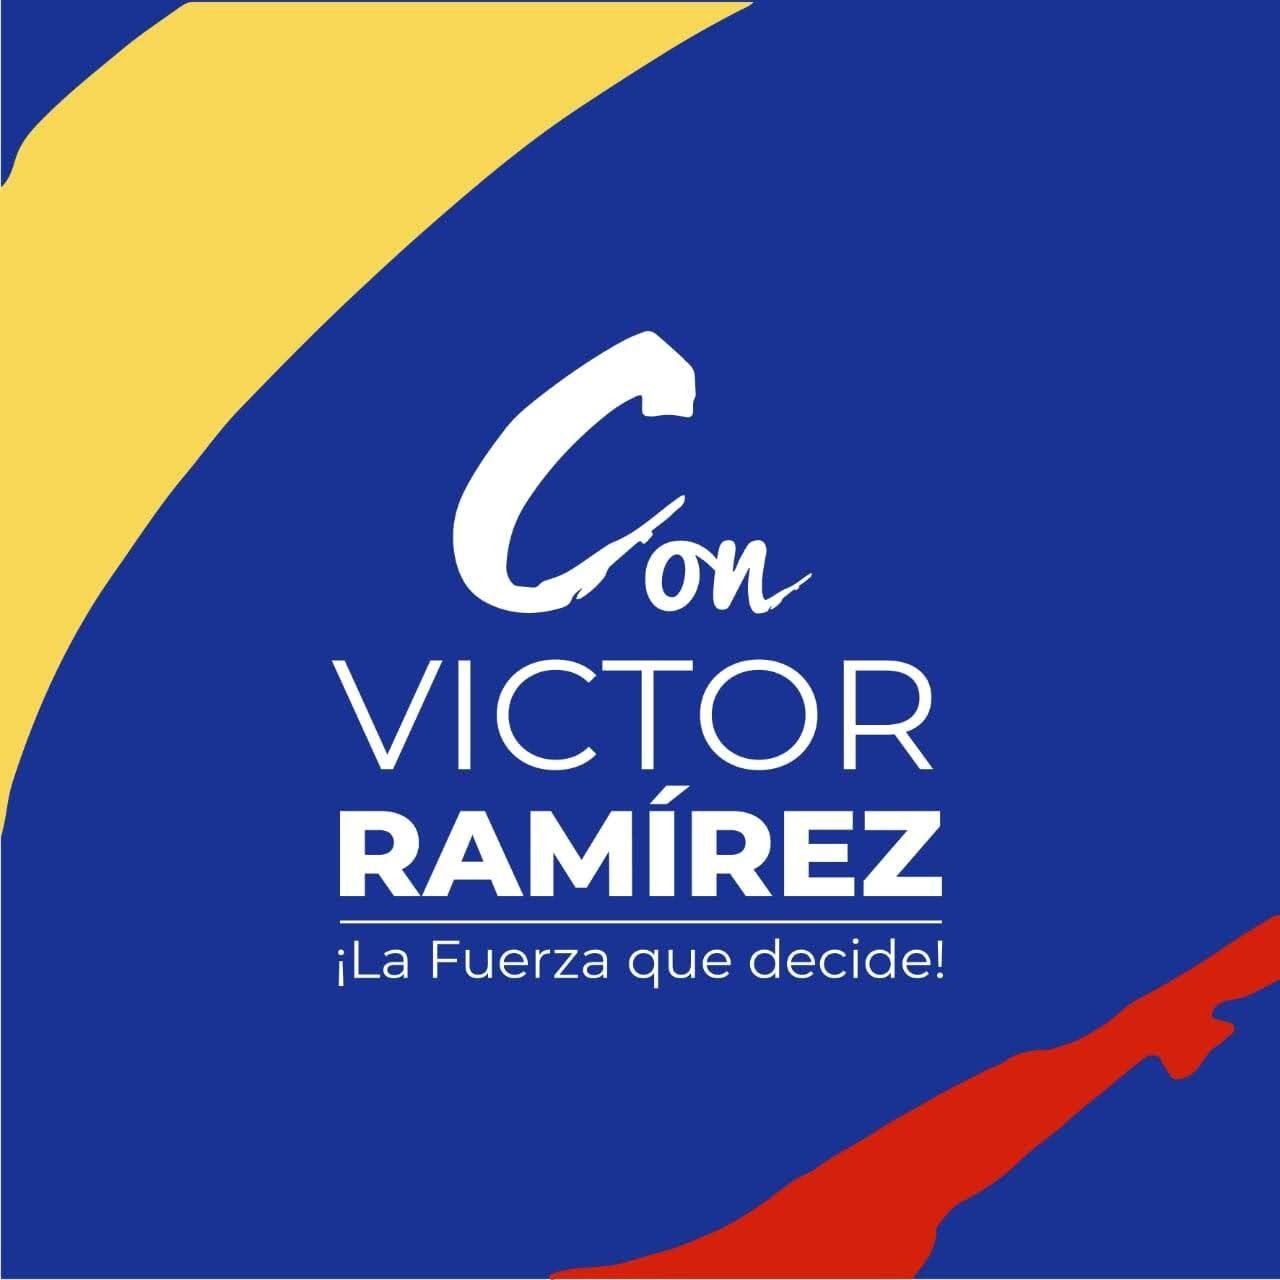 PARTIDO CONSERVADOR VICTOR RAMIREZ